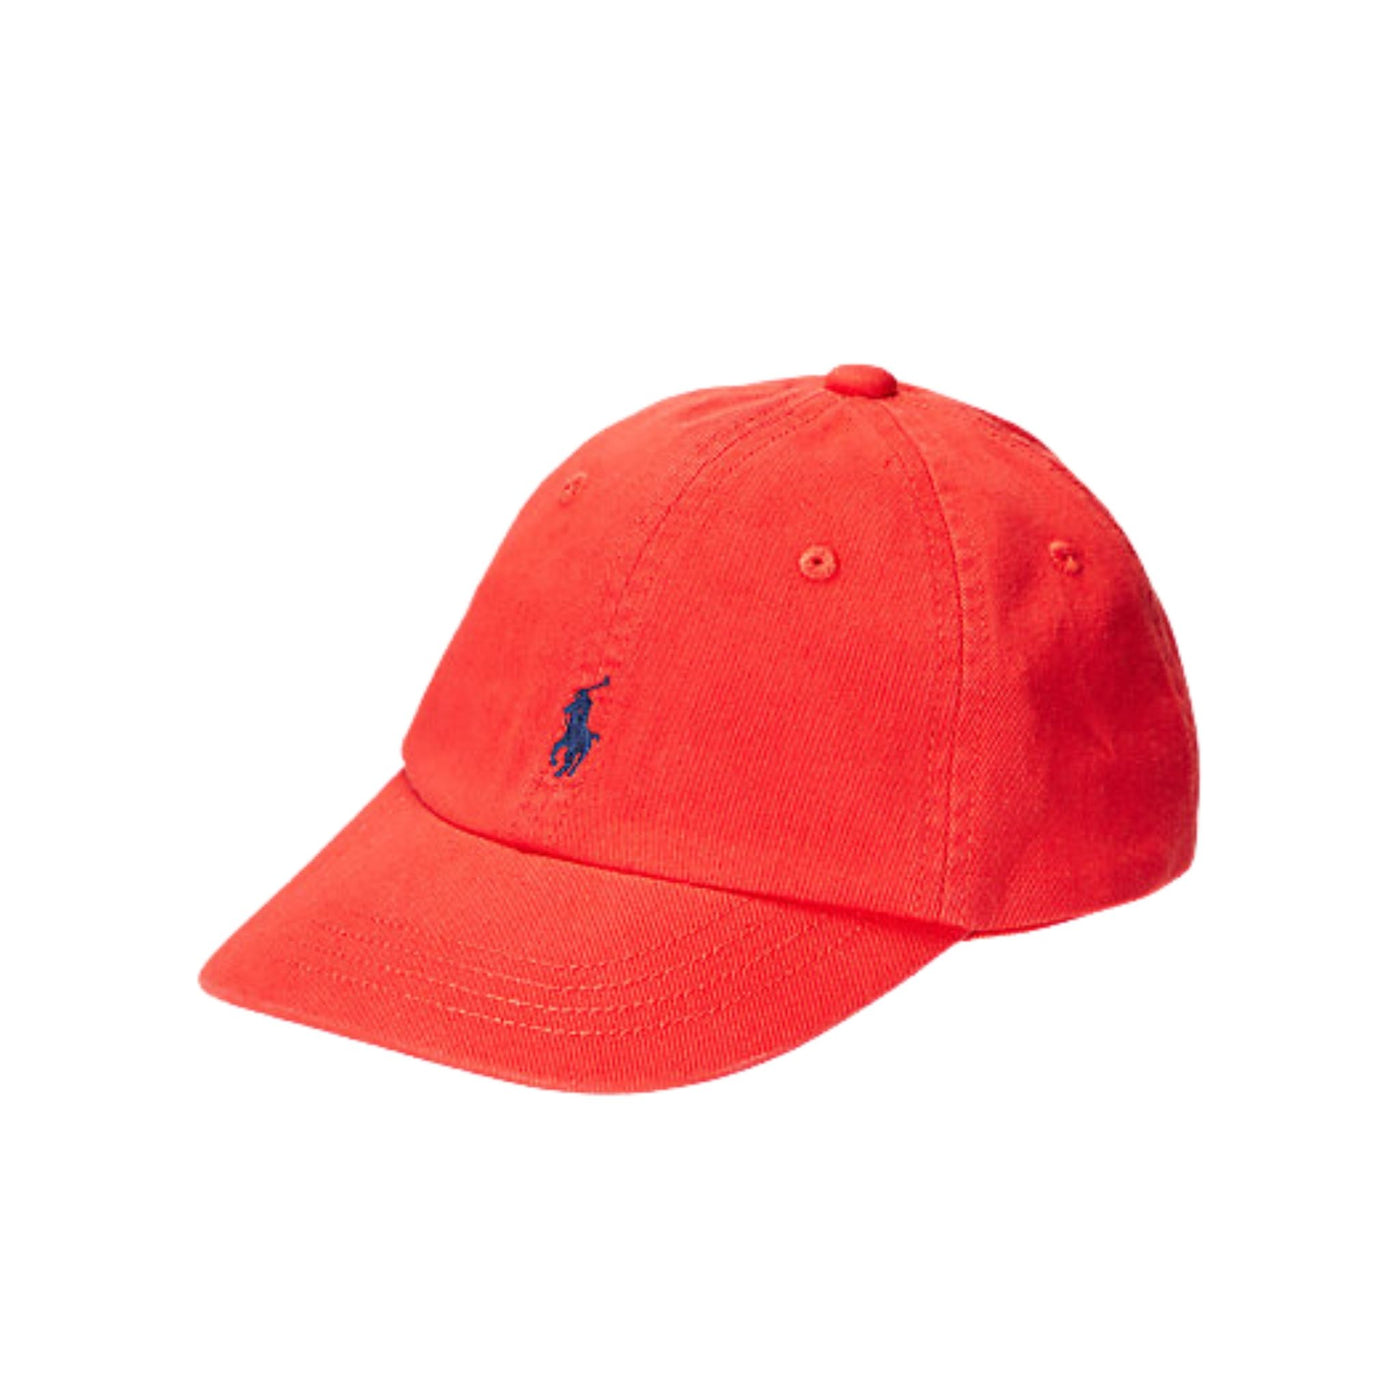 Cappello bambino rosso firmato Polo Ralph Lauren vista frontale